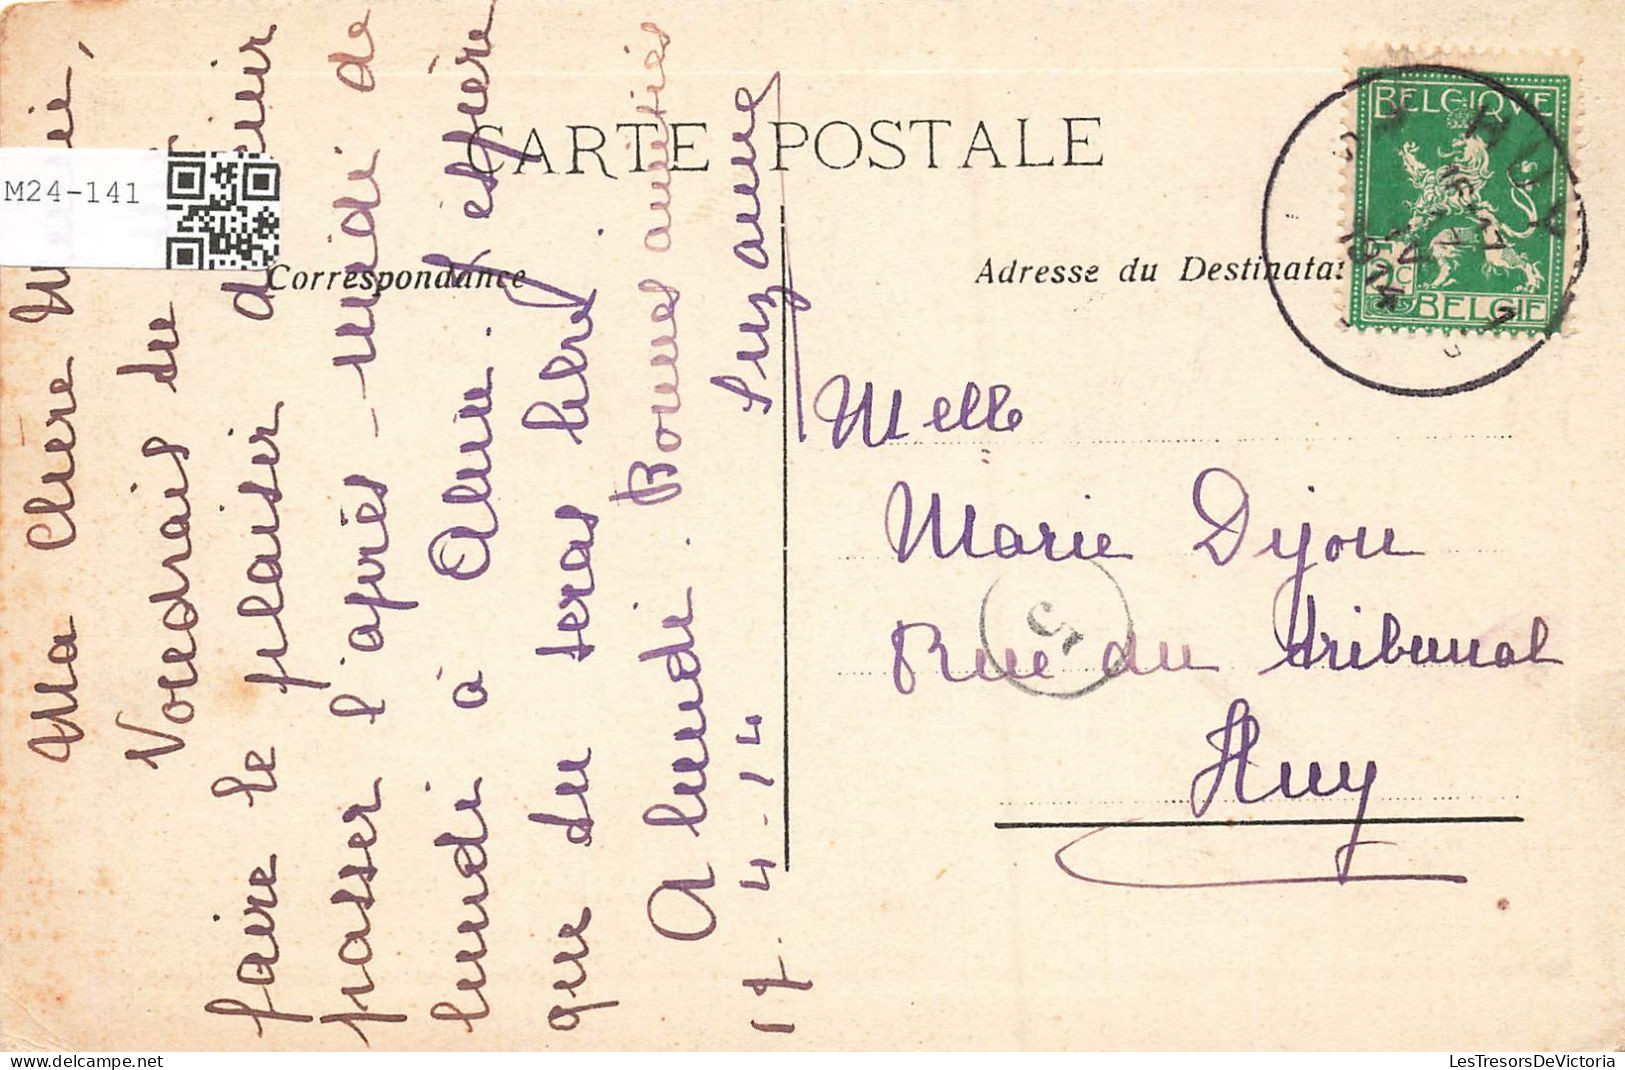 MODE - Une Femme Assise écrivant Une Lettre - Carte Postale Ancienne - Mode